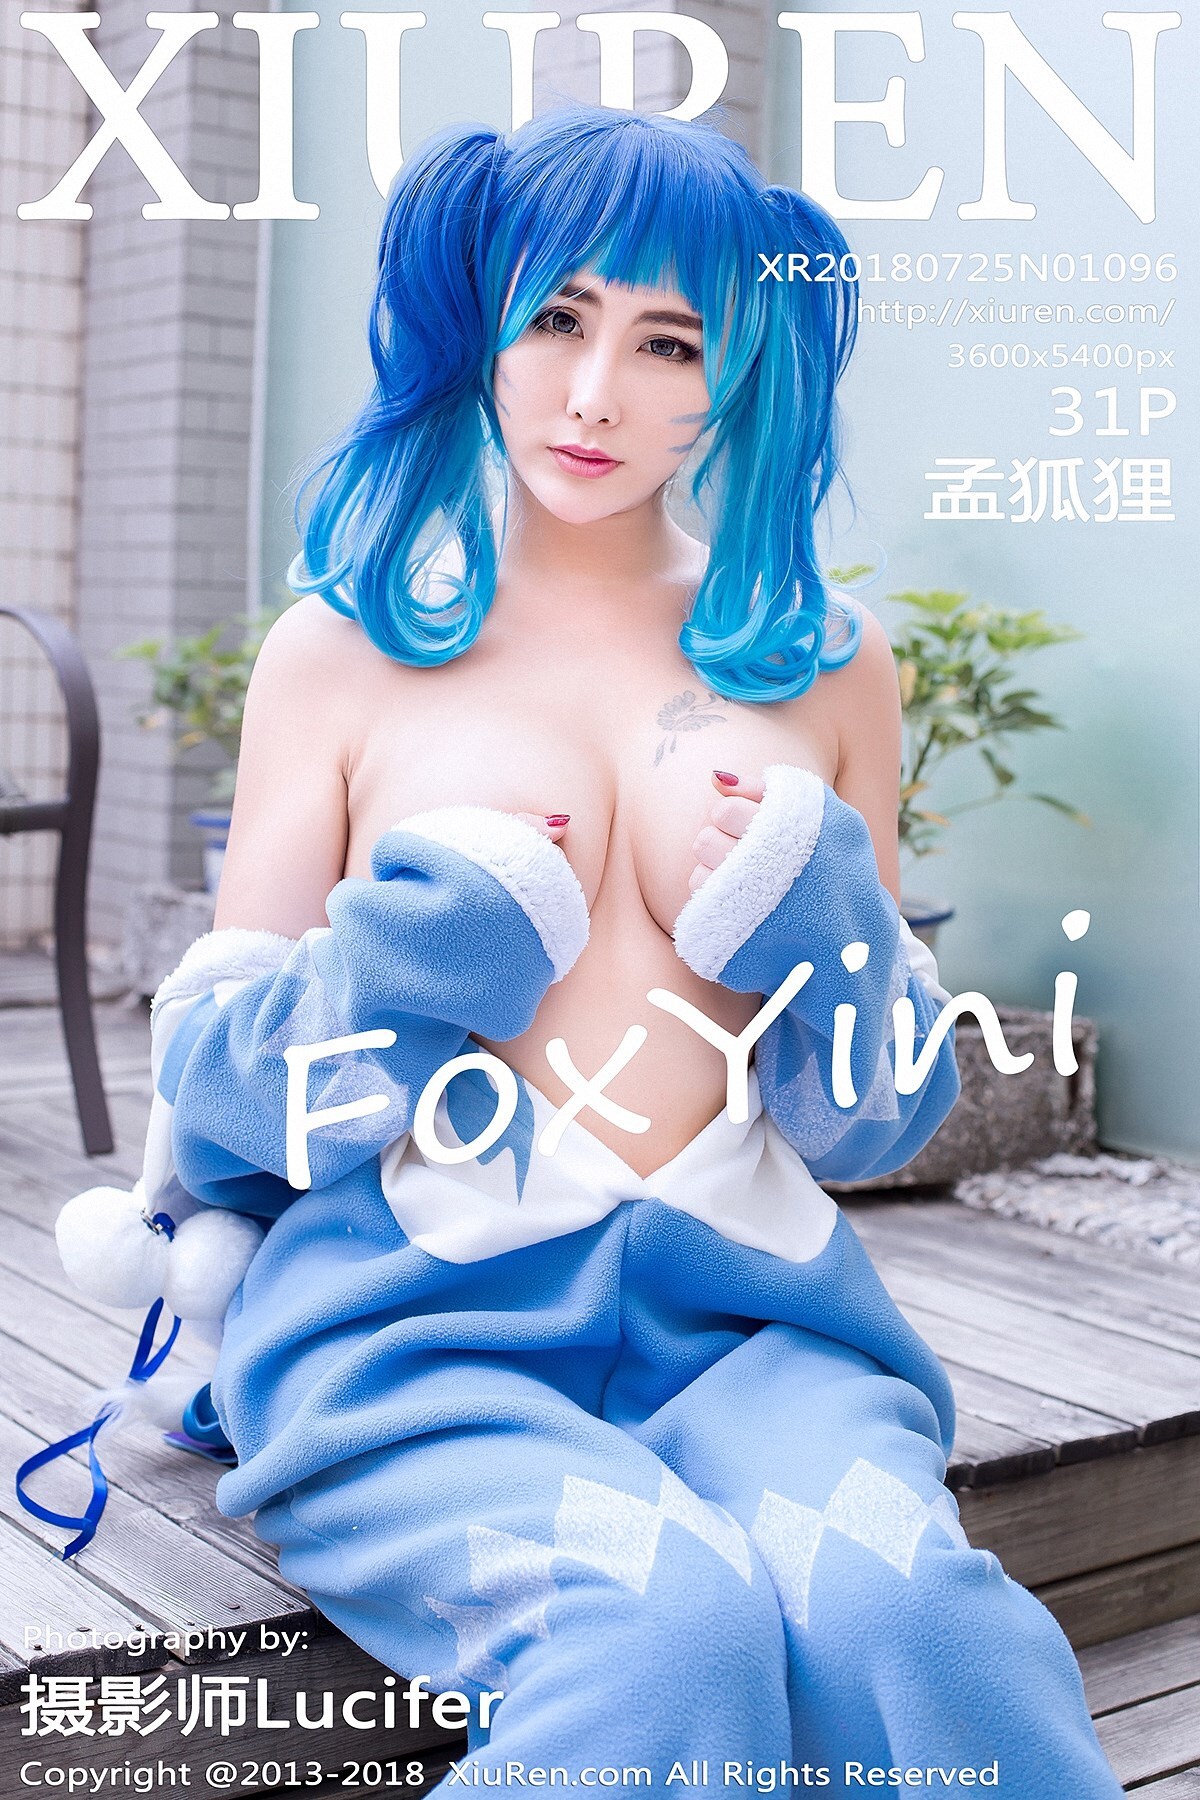 [xiuren.com] July 25, 2018 no1096 fox yini